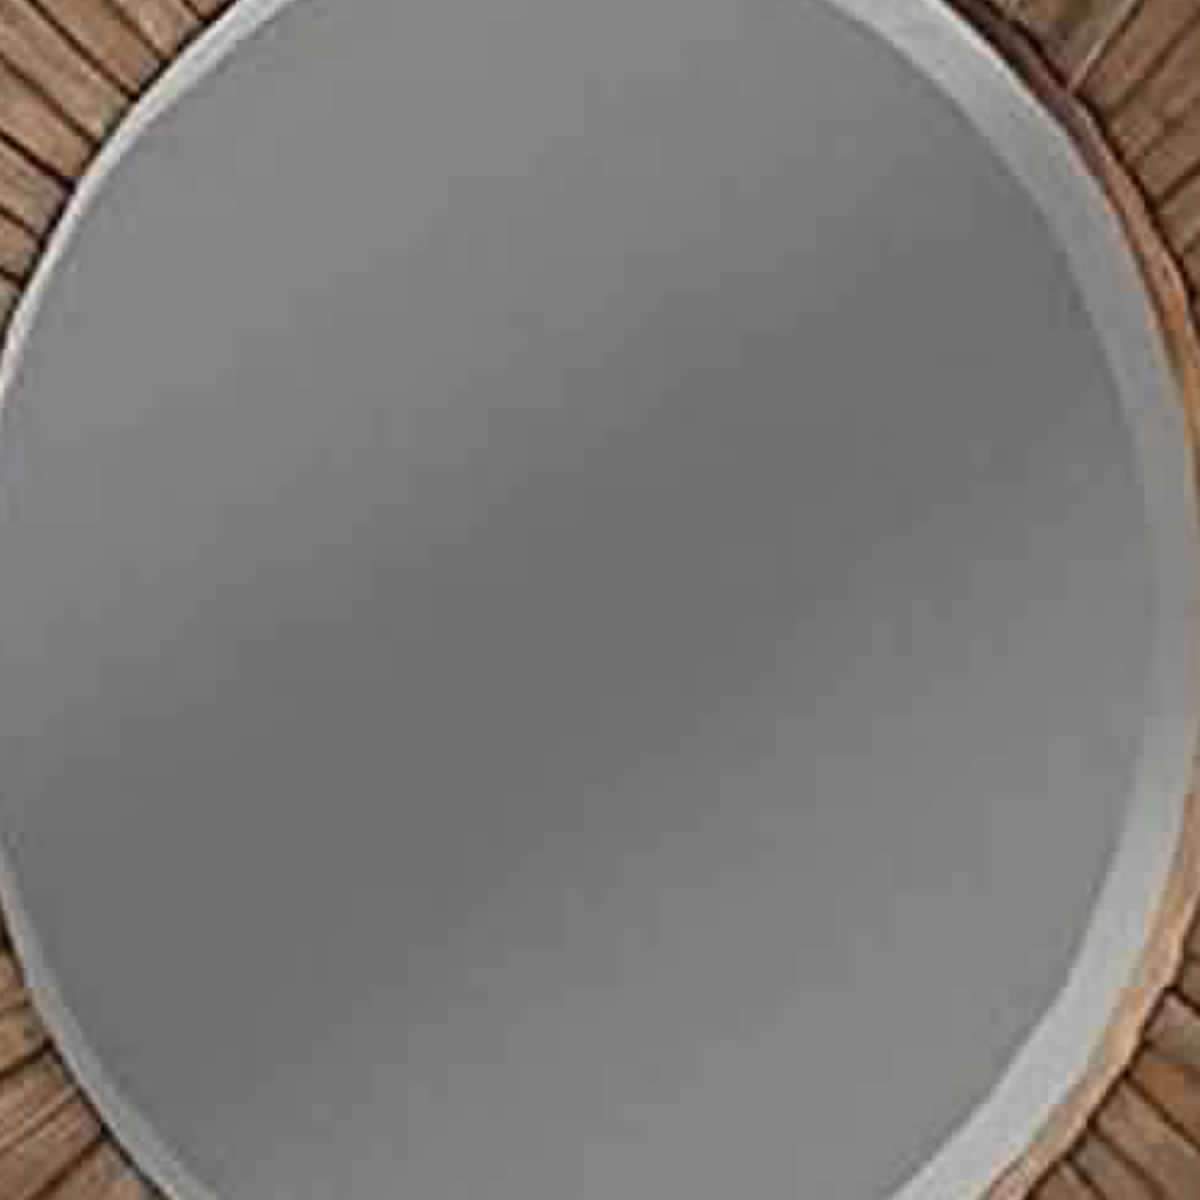 Transitional Sunburst Round Mirror with Wooden Frame, Brown - BM220483